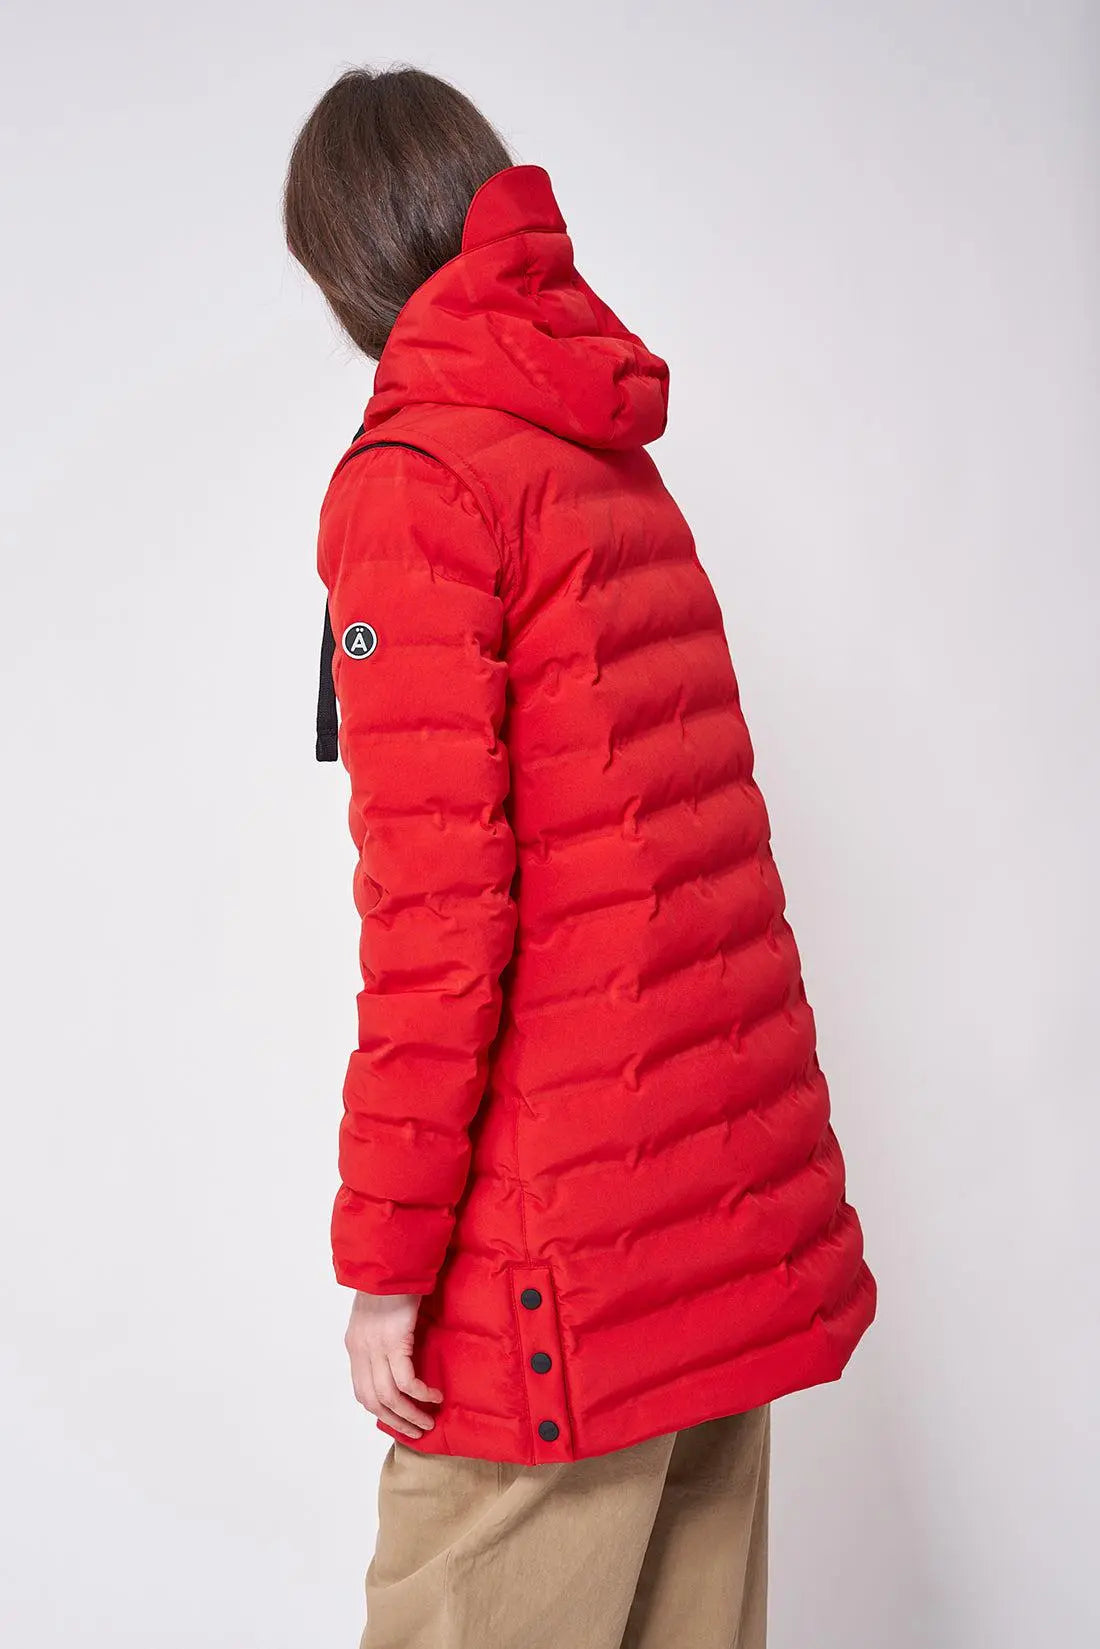 Abrigo y chaleco impermeable de mujer. Tipo plumífero. Rojo